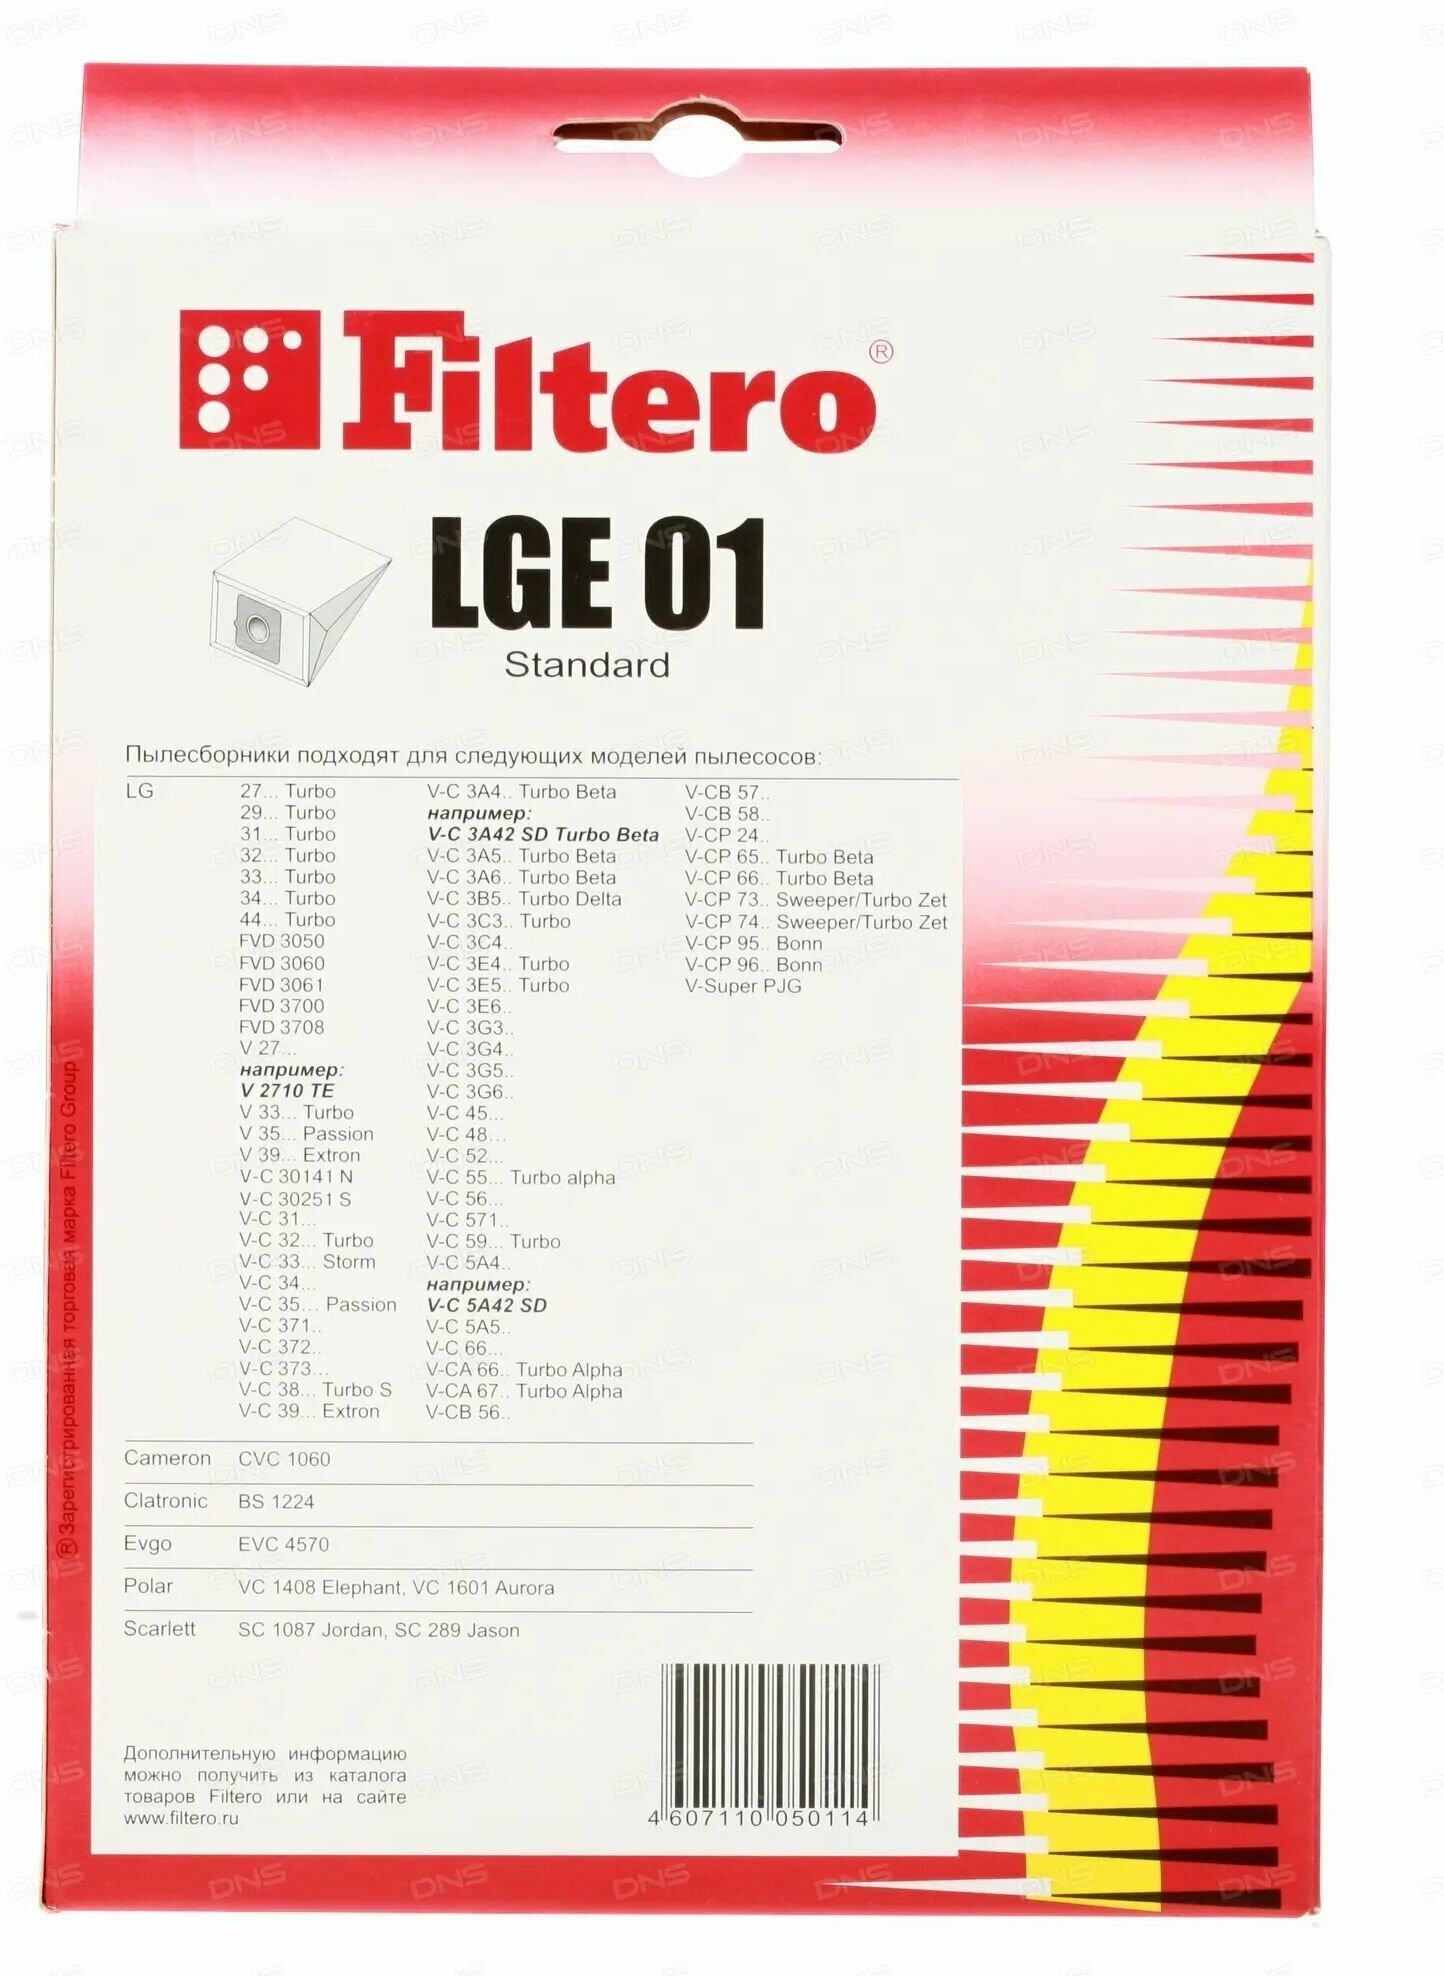 Пылесборники FILTERO LGE 01 Standard, двухслойные, 5 шт., для пылесосов LG - фото №18